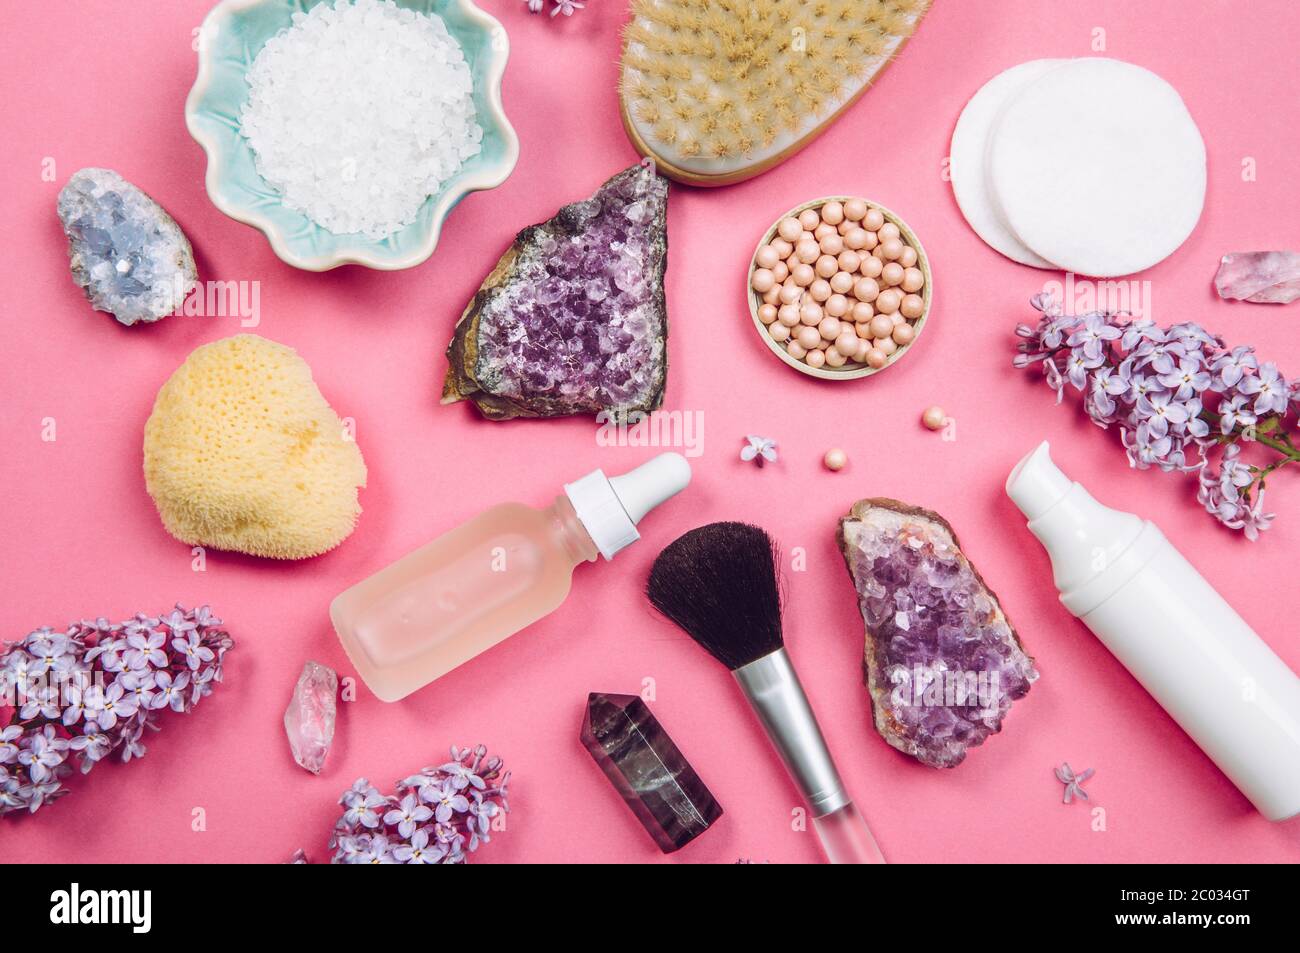 Oben von oben nach unten Ansicht von verschiedenen weißen Kosmetik- und Beauty-Produkte Behälter mit Flieder (Syringa) Blüten und halb kostbaren Amethyst Kristall Cluster Stockfoto